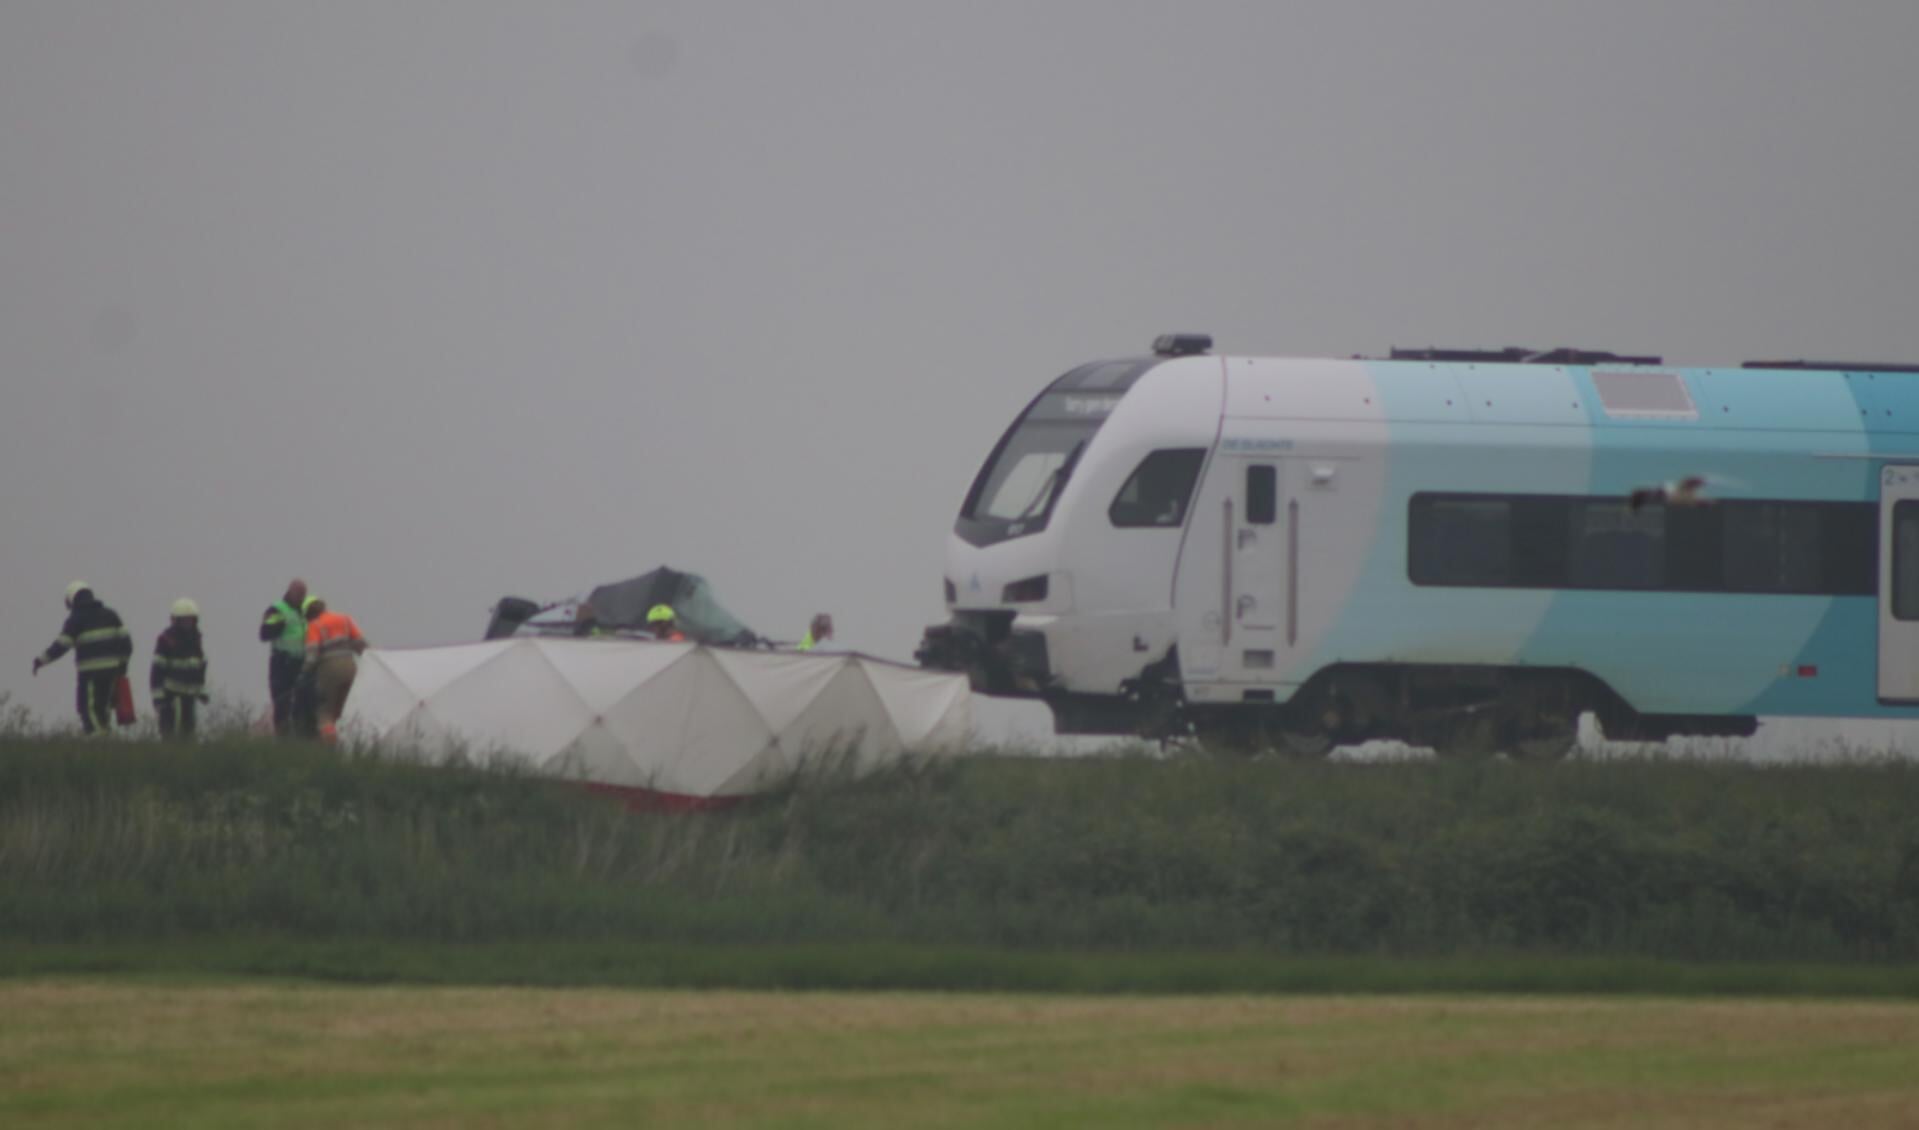 De twee slachtoffers van het treinongeluk in Boazum zijn een echtpaar uit Schagen, zo maakt politie Friesland bekend.